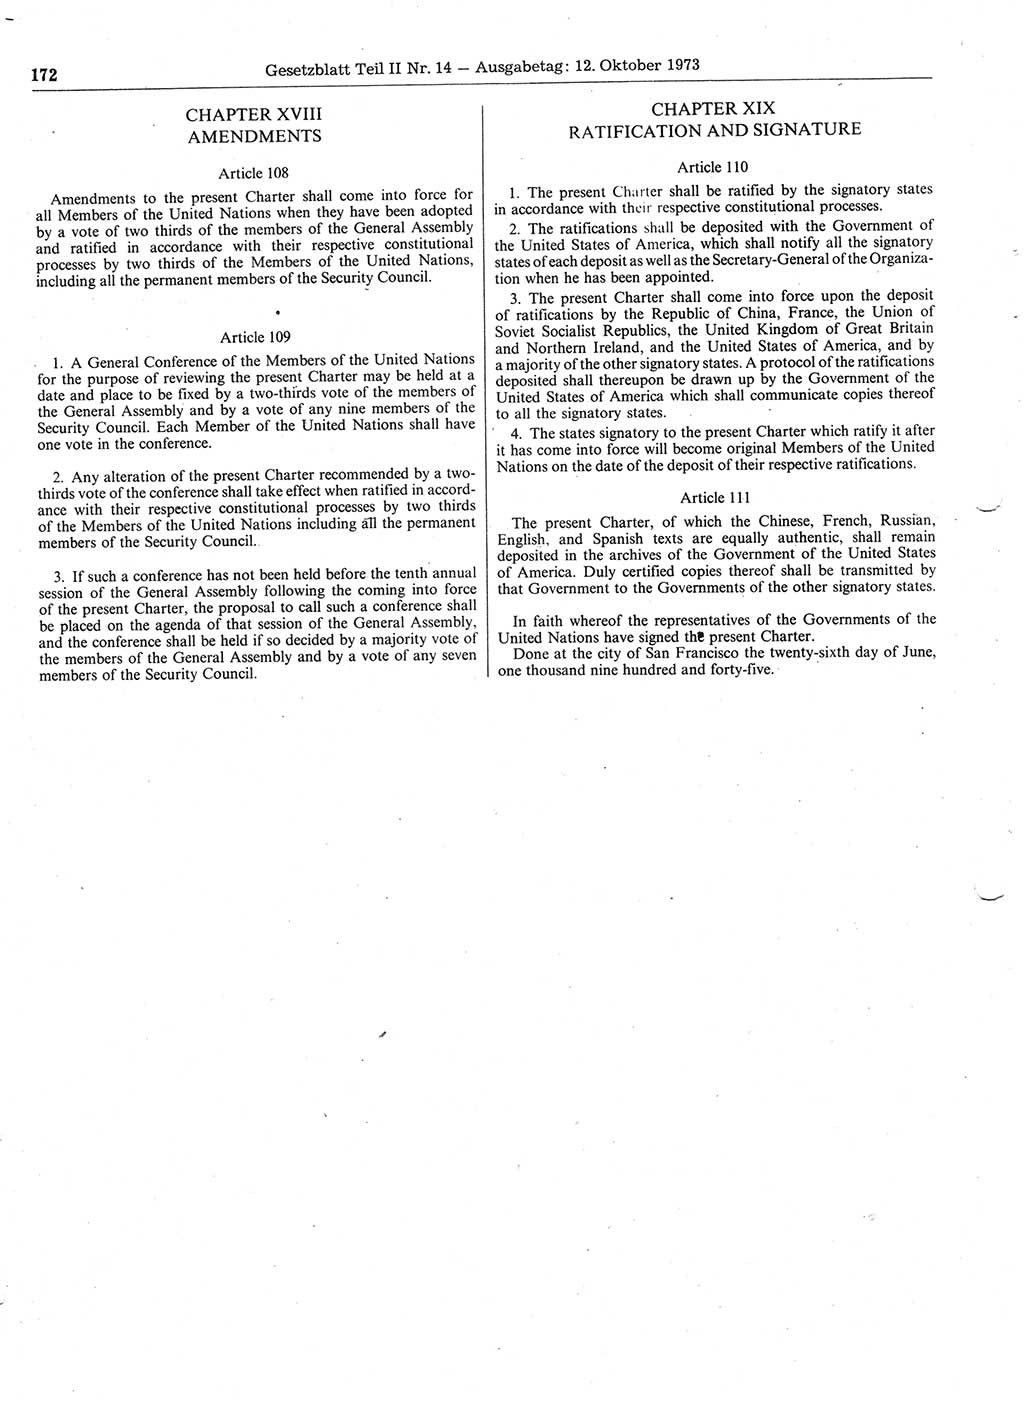 Gesetzblatt (GBl.) der Deutschen Demokratischen Republik (DDR) Teil ⅠⅠ 1973, Seite 172 (GBl. DDR ⅠⅠ 1973, S. 172)